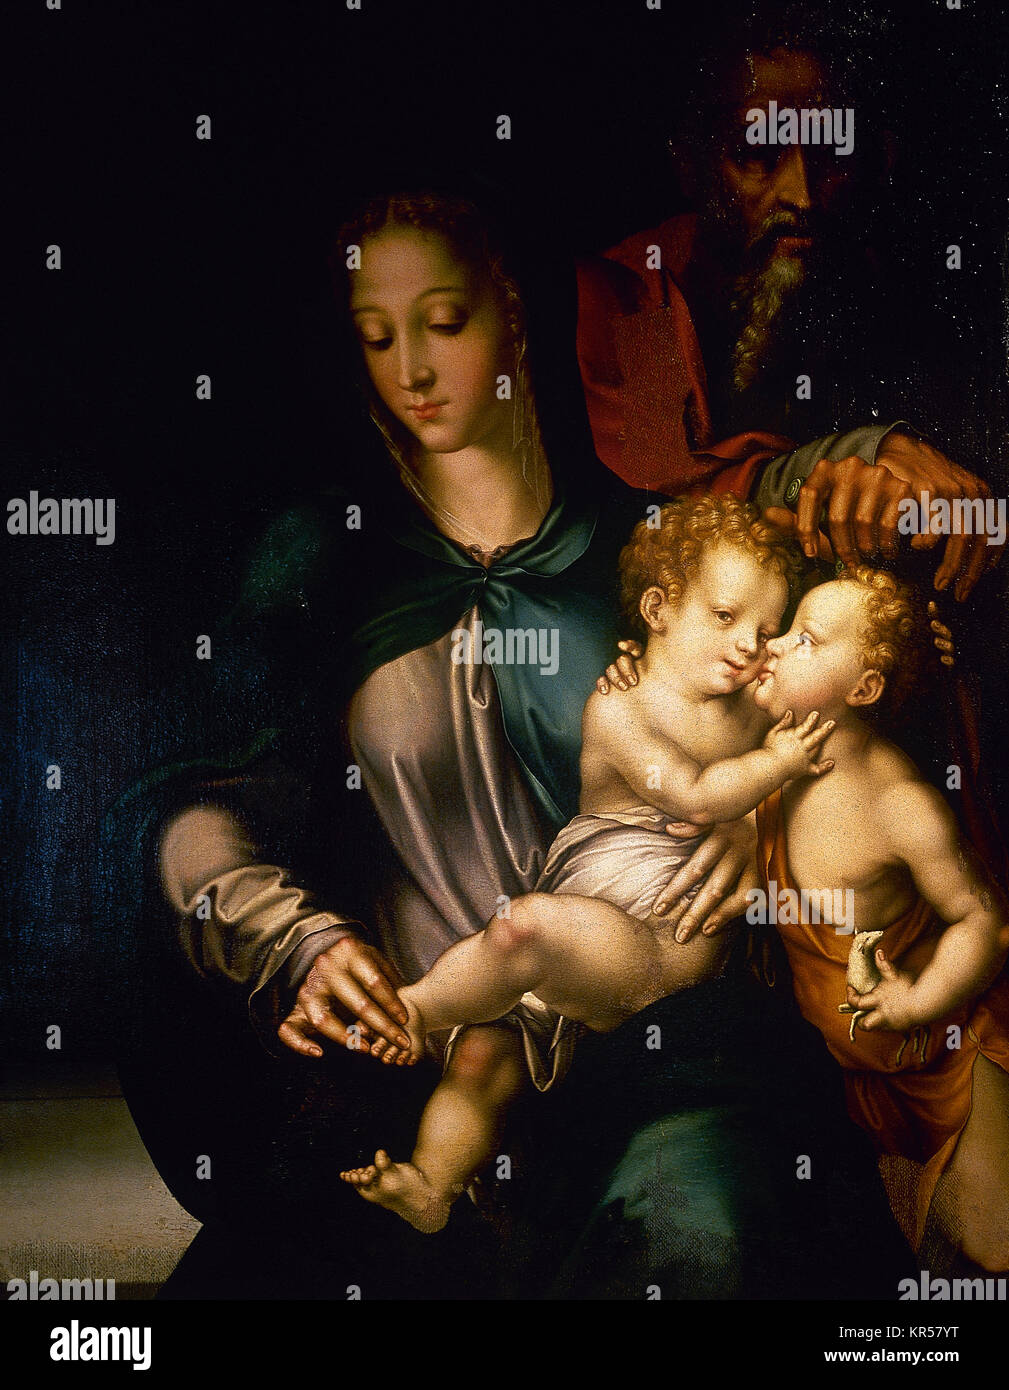 Luis de Morales (1509-1586). Peintre espagnol. La Sainte Famille avec l'enfant st. Joht le Baptiste. 16e siècle. Musée de Roncevaux. Navarre, Espagne. Banque D'Images